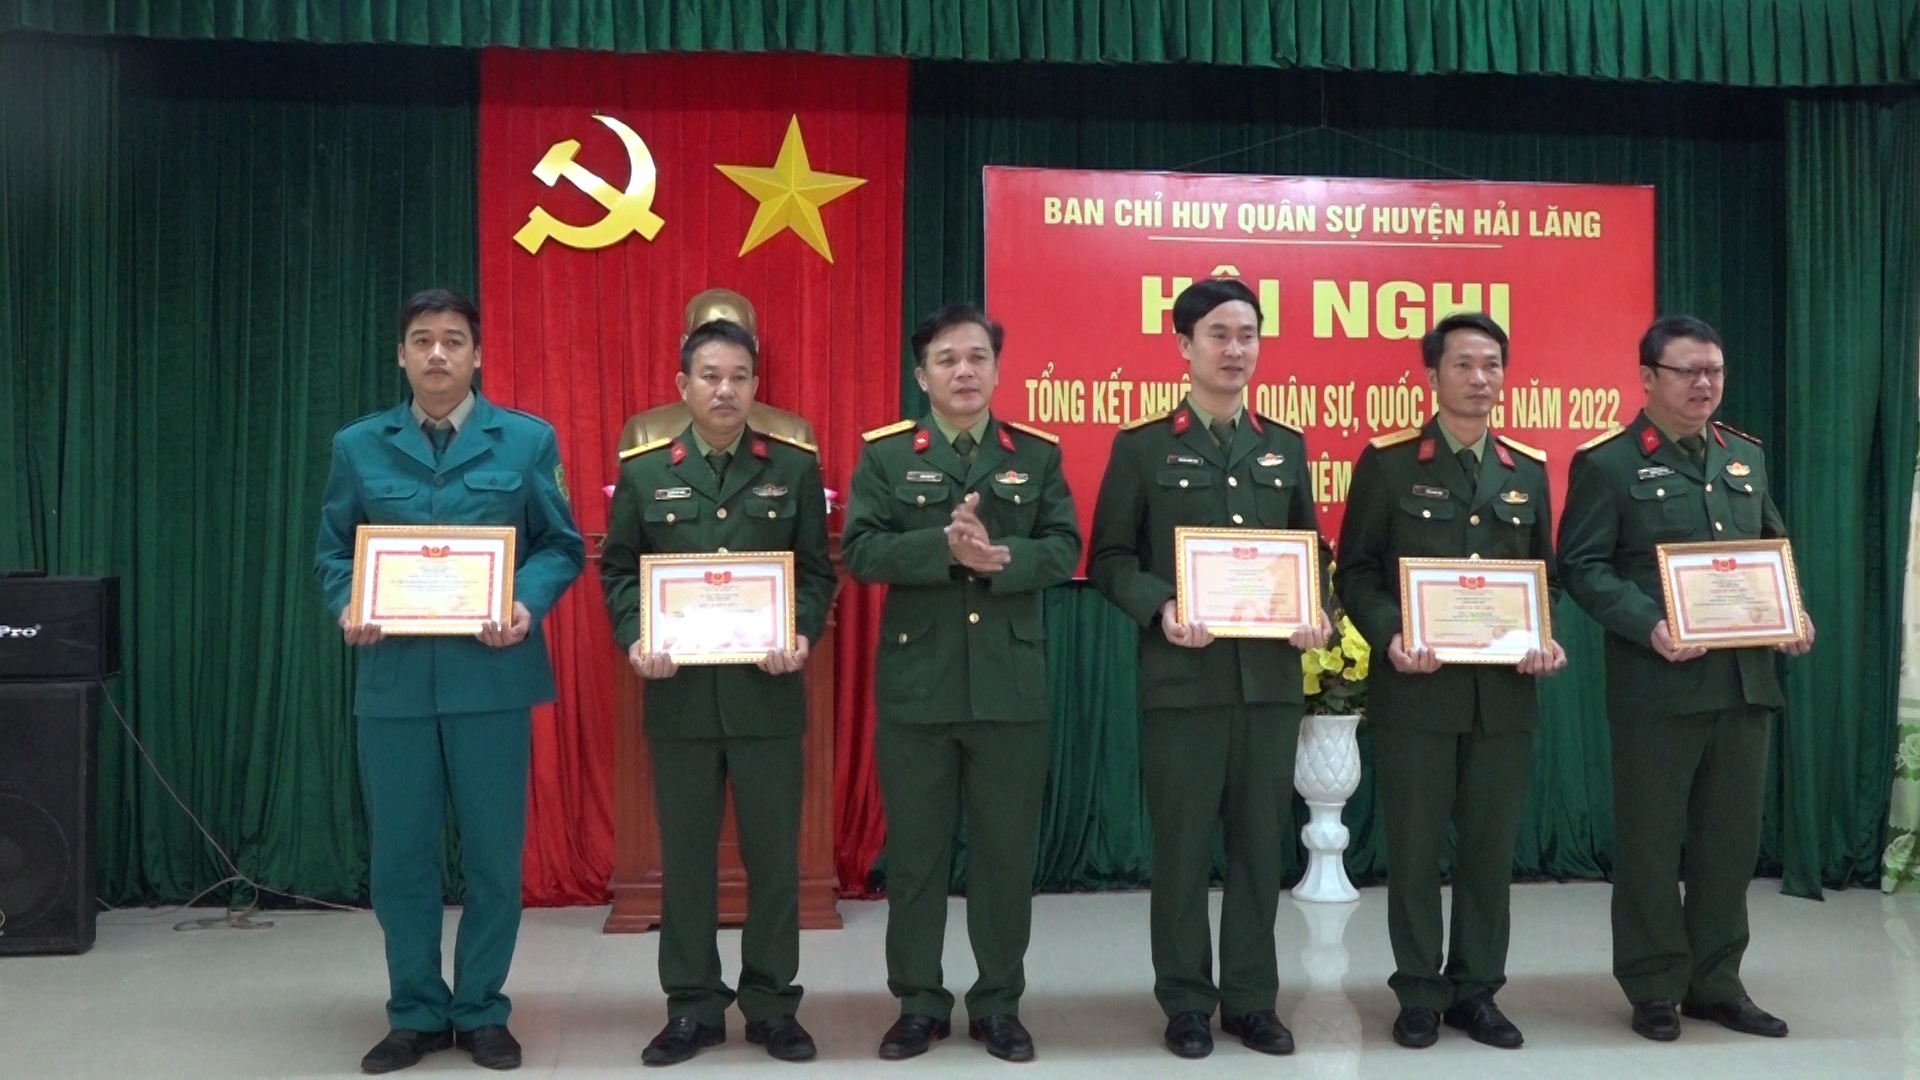 Thượng tá Trần Đình Hải-Chỉ huy trưởng Ban CHQS huyện tặng giấy khen cho các tập thể, cá nhân tại hội nghị